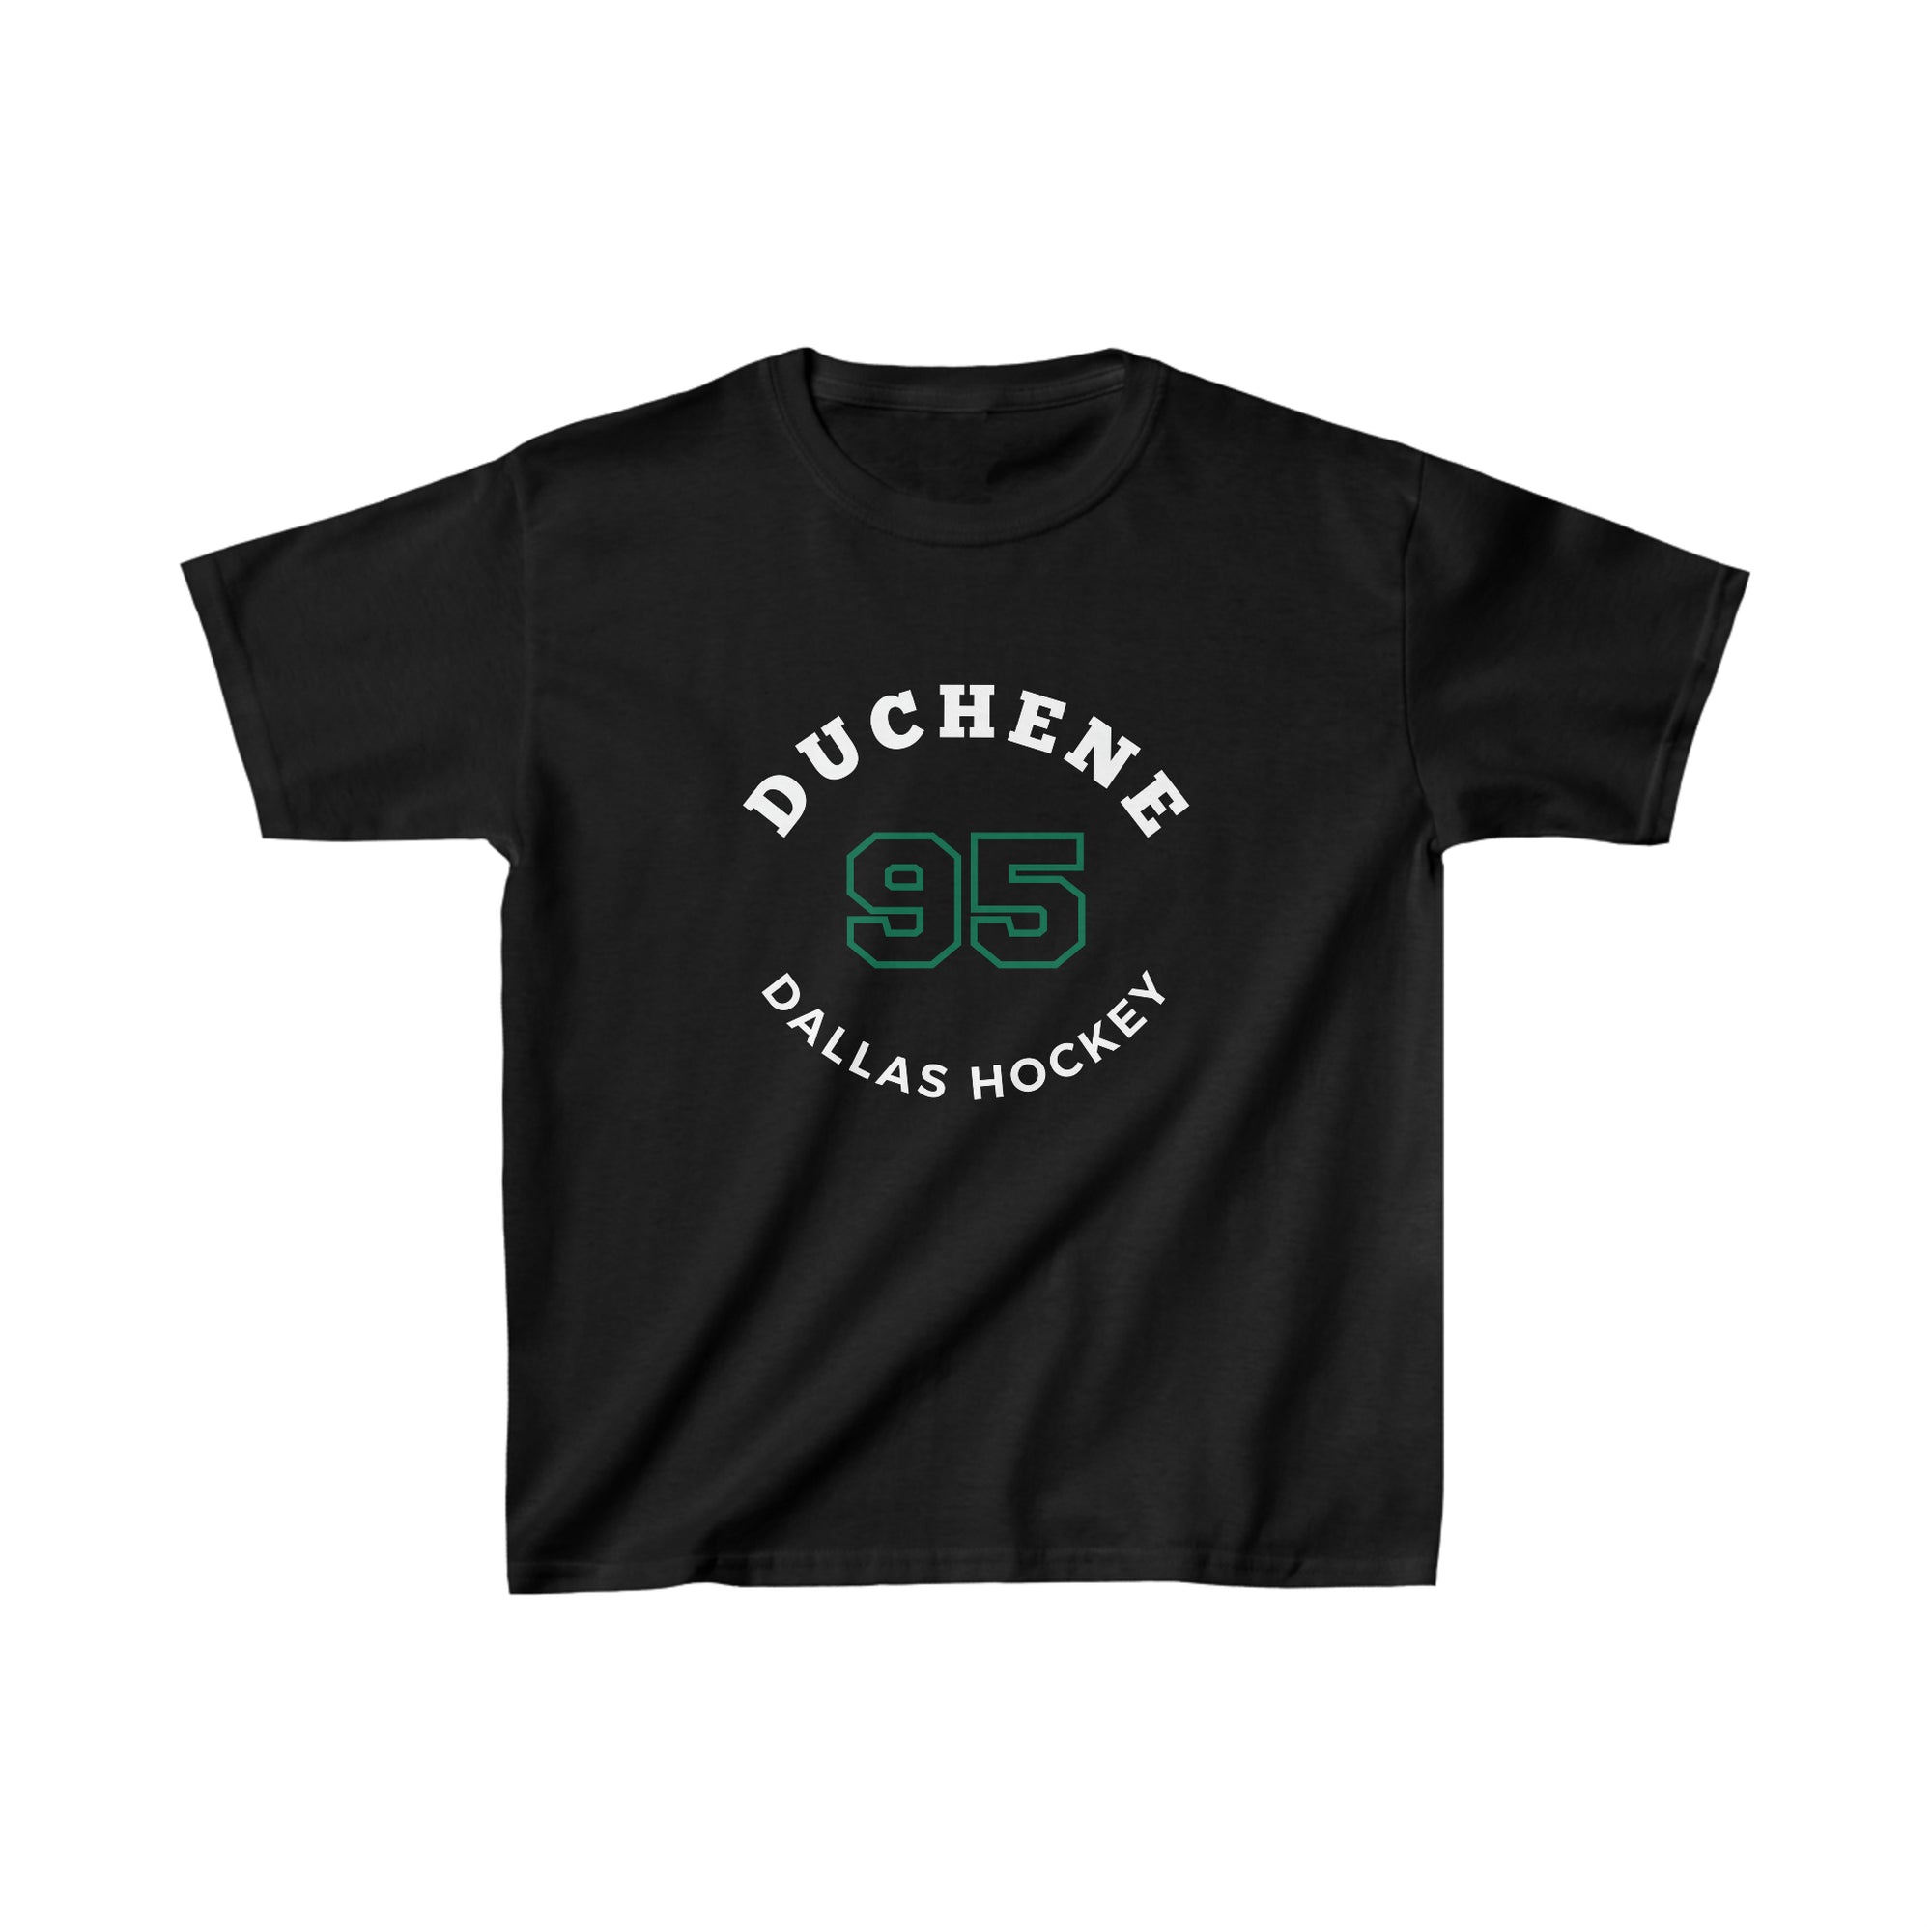 Duchene 95 Dallas Hockey Number Arch Design Kids Tee